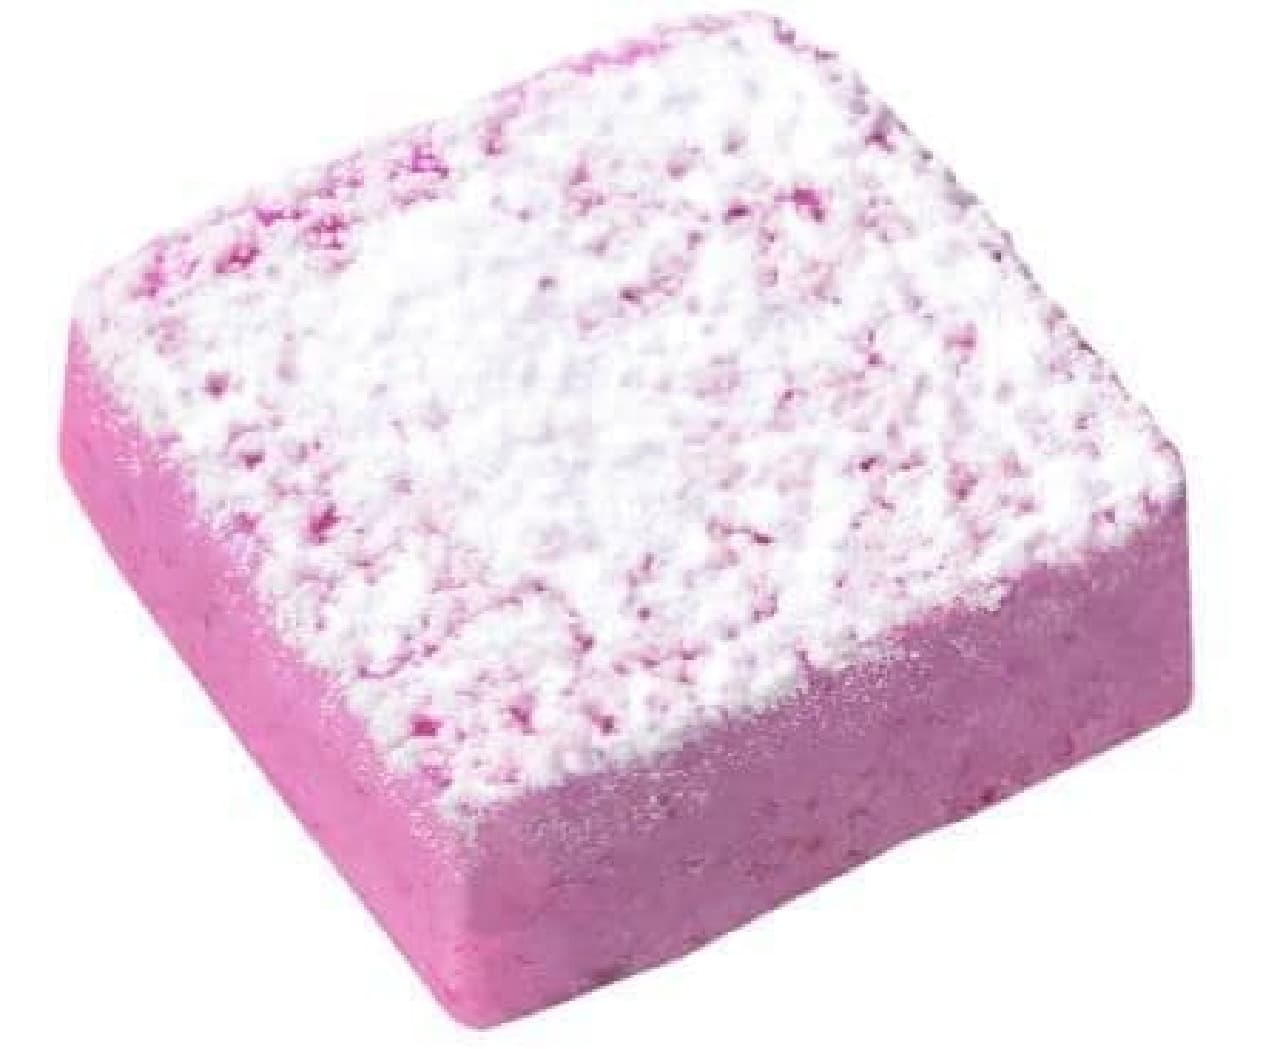 「粉雪ショコラ濃苺」は、たっぷりの苺パウダーと生クリームが贅沢に使用された苺感あふれる生チョコレート